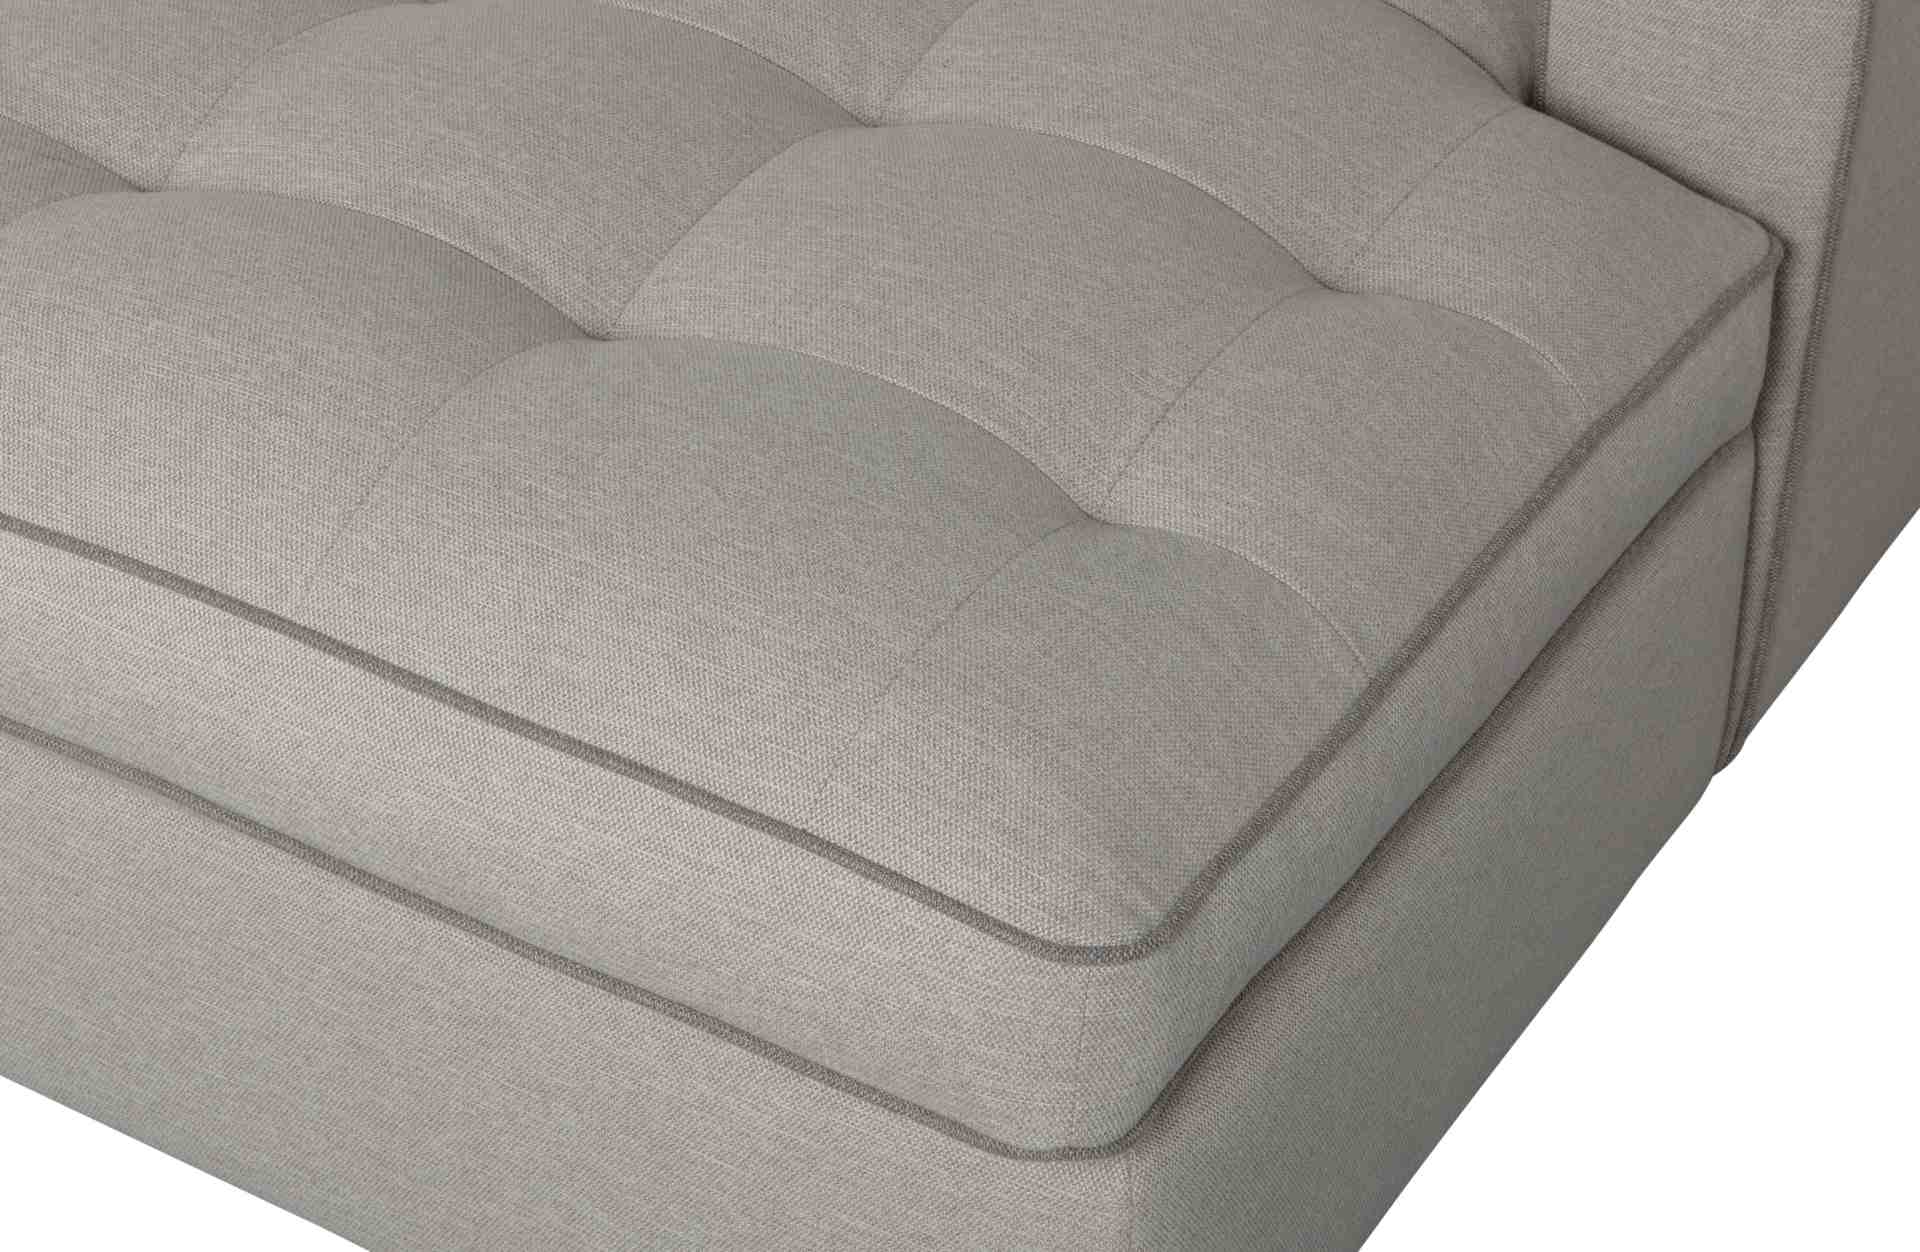 Das Ecksofa Lisa überzeugt mit seinem klassischen Design. Gefertigt wurde es aus Kunststofffasern, welche einen einen grauen Farbton besitzen. Die Ausführung des Sofas ist Rechts. Die Sitzhöhe beträgt 51 cm.